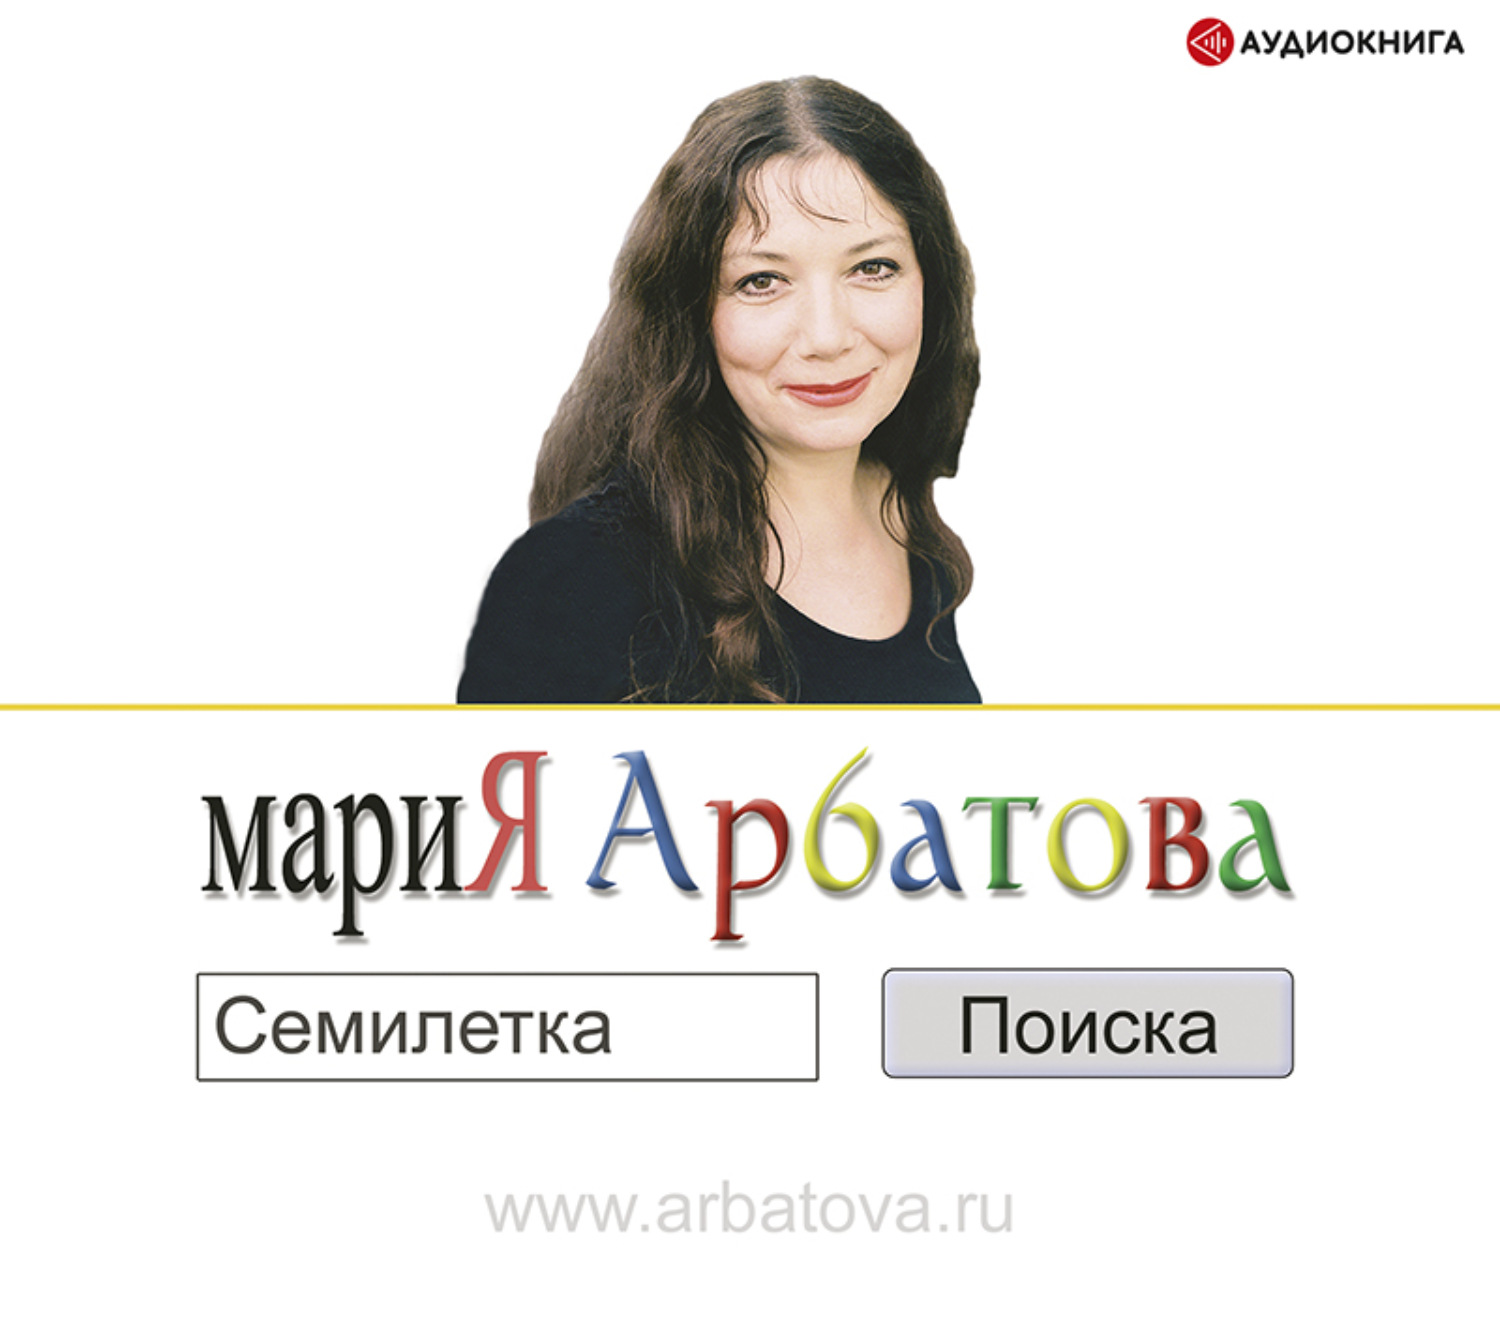 Ангелина Арбатова